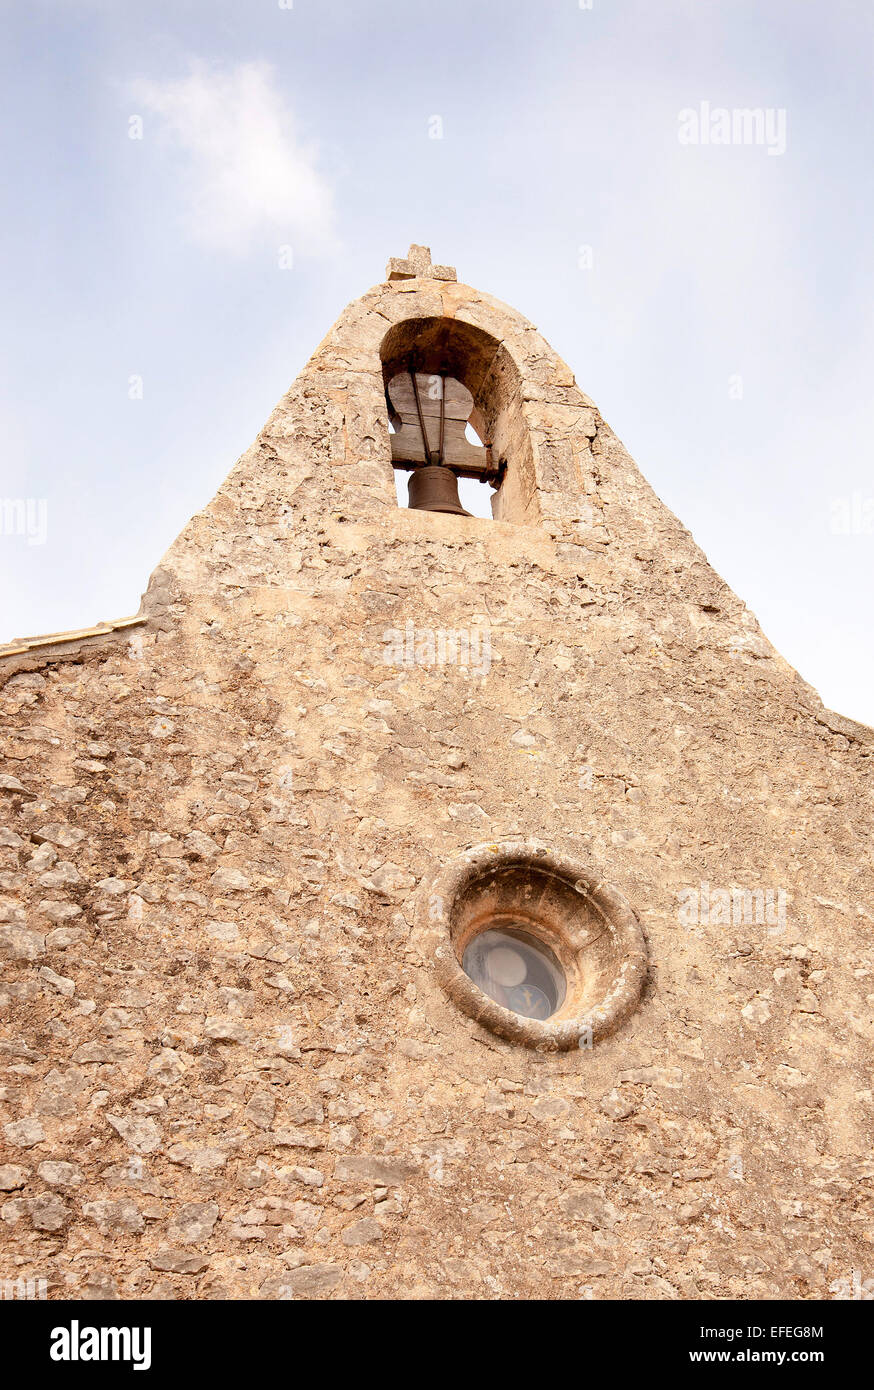 Le Campanile avec beffroi au monastère Santuari de Cura de Randa, Majorque. Banque D'Images